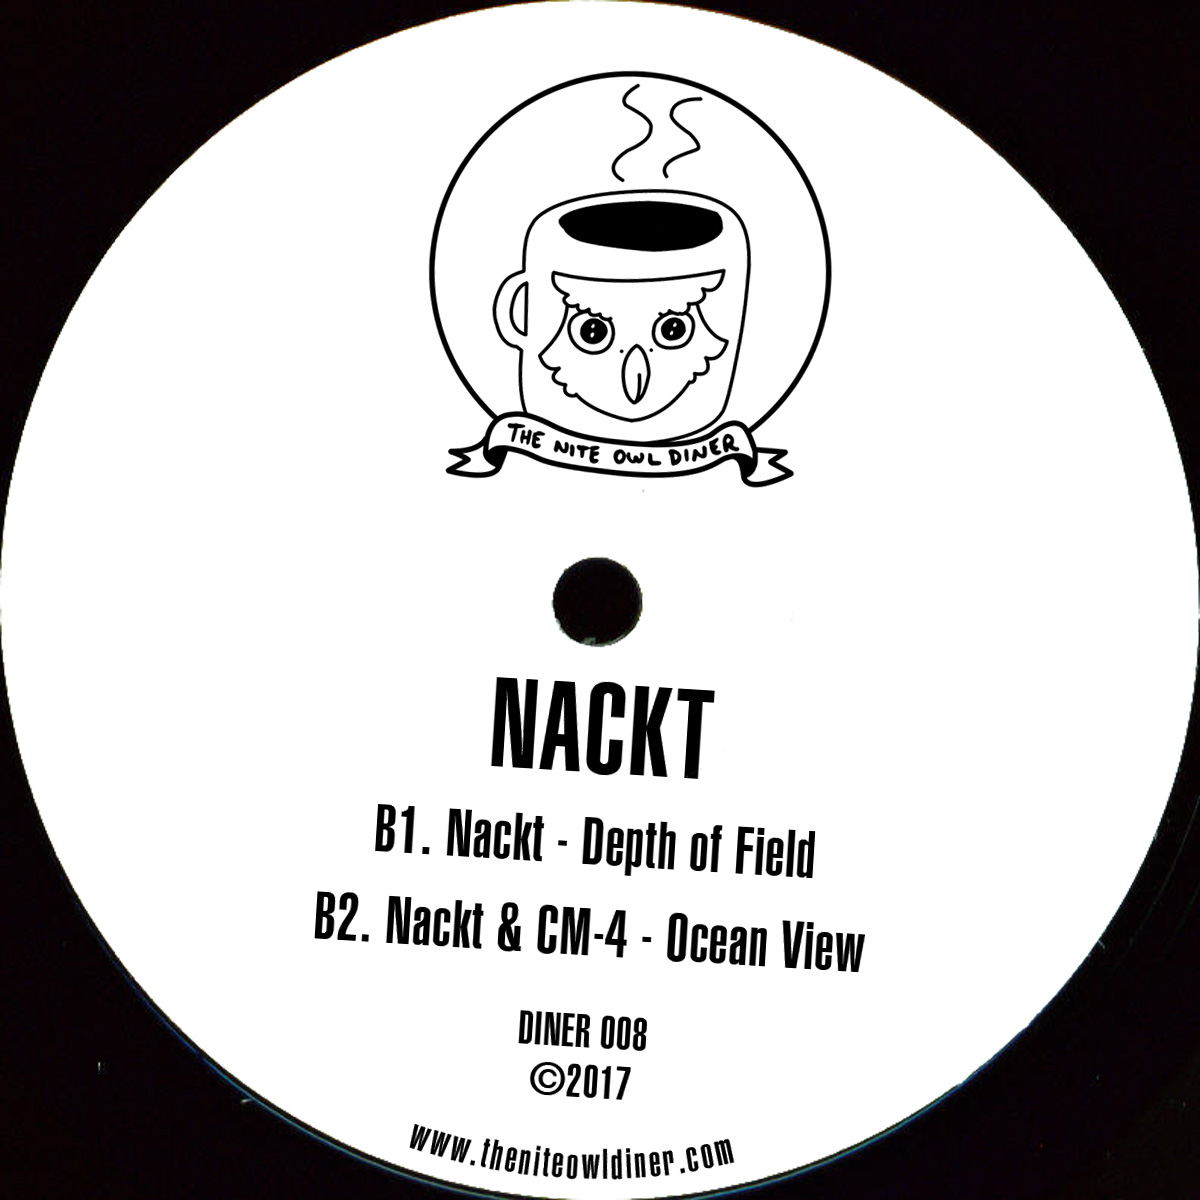 Nackt ft Kendig & CM4/NIGHT SYSTEM 12"